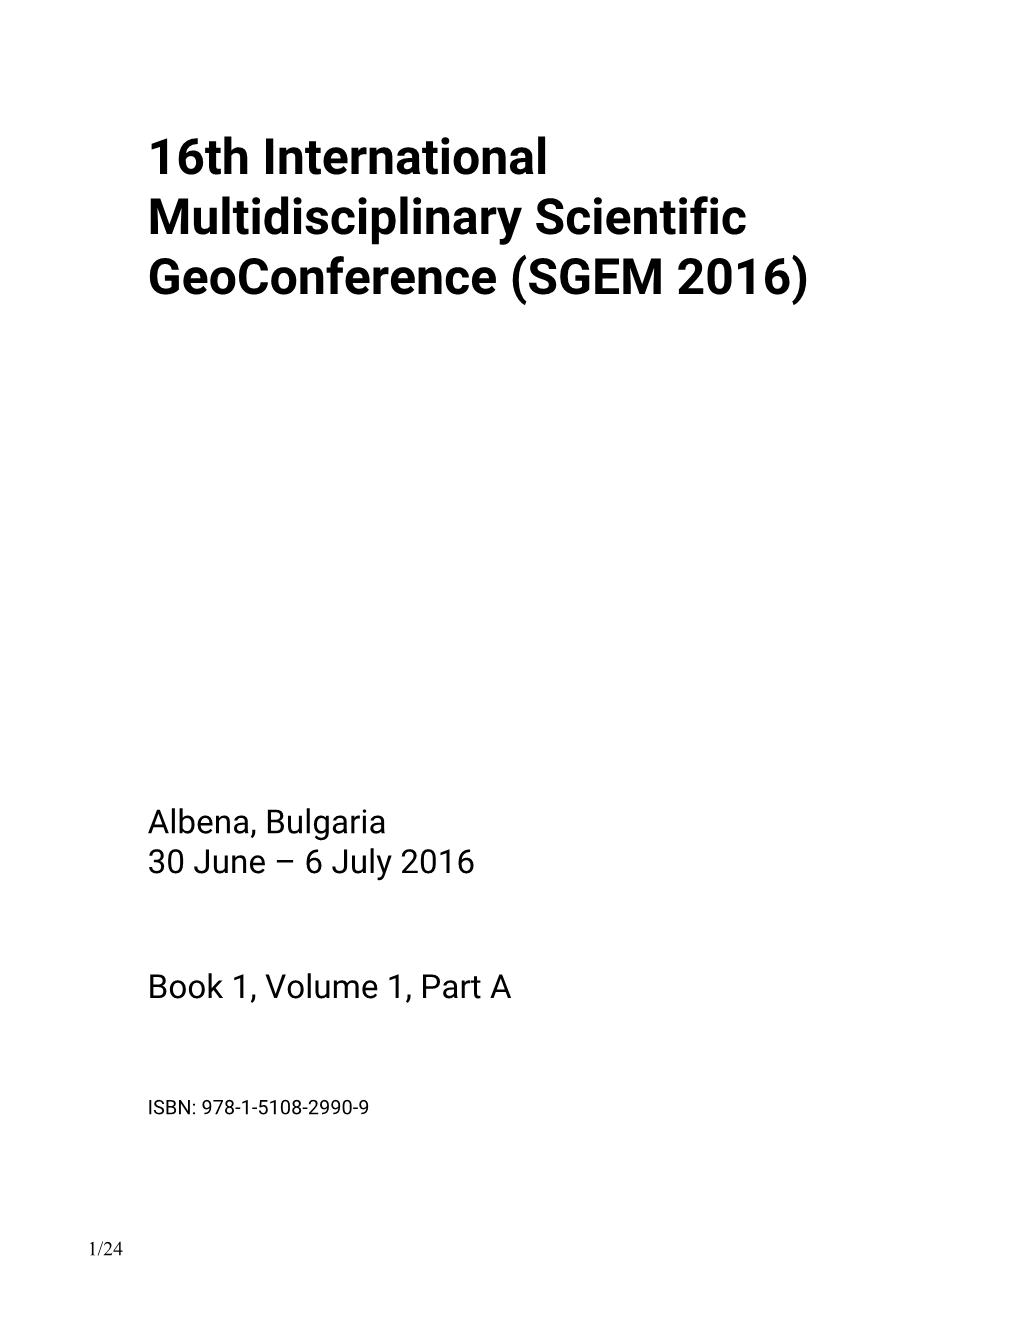 16Th International Multidisciplinary Scientific Geoconference (SGEM 2016)